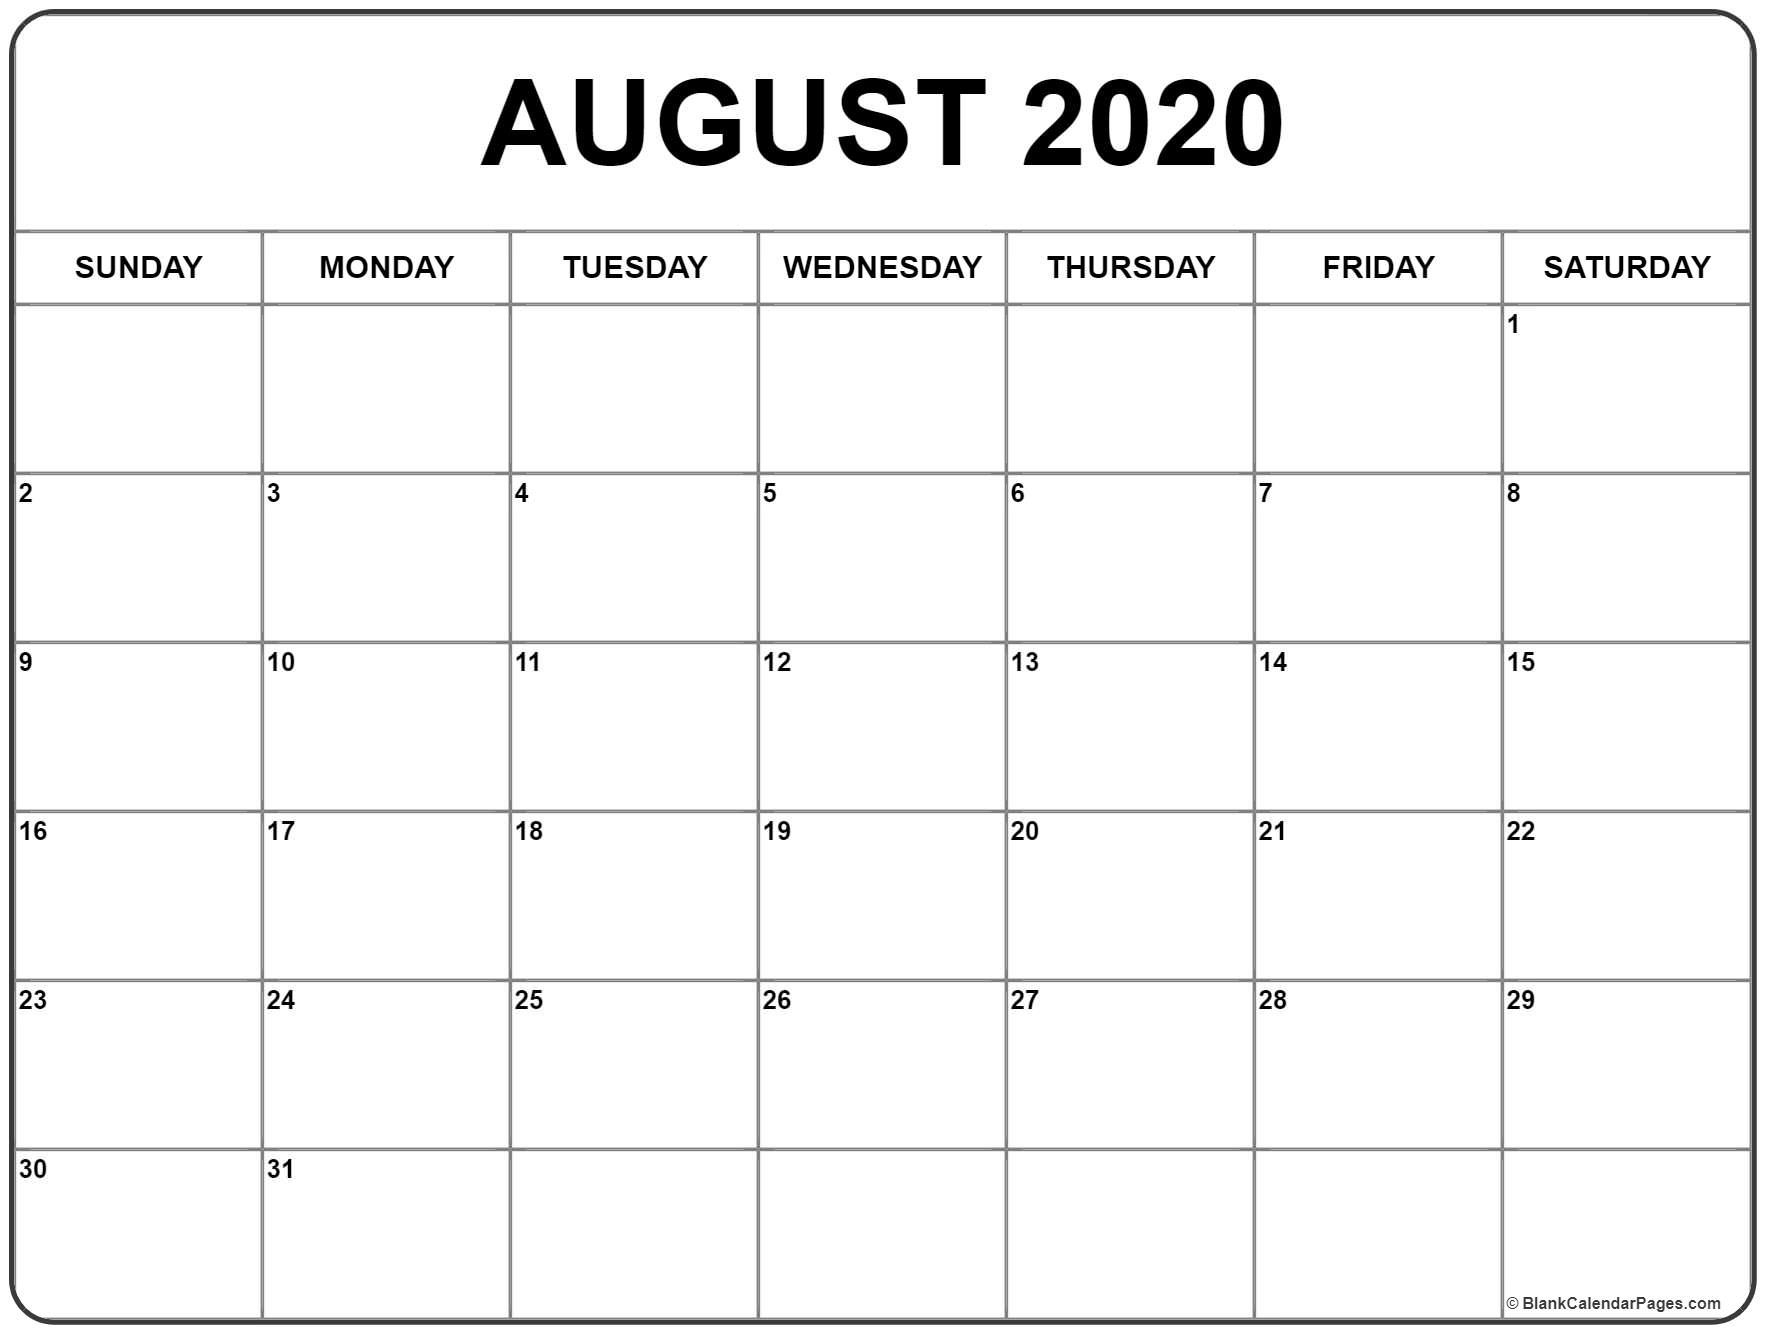 August 2020 Calendar | August Calendar, Monthly Calendar